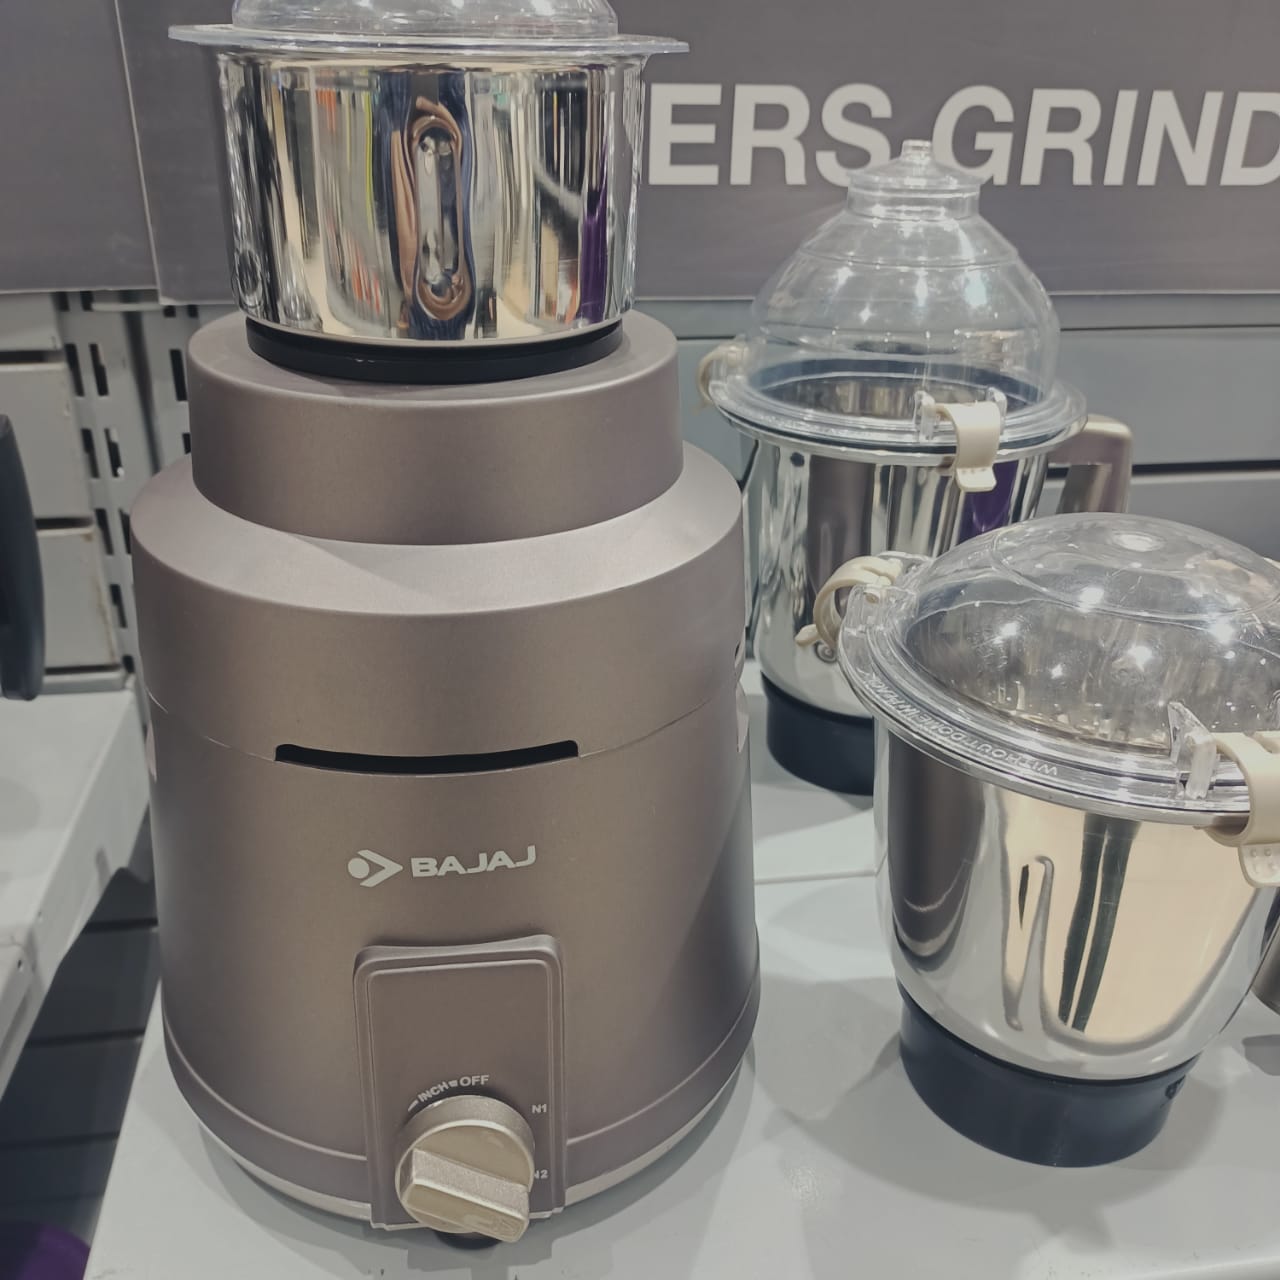 Bajaj Herculo 1000W Powerful Mixer Grinder with 3 Stainless steel jars